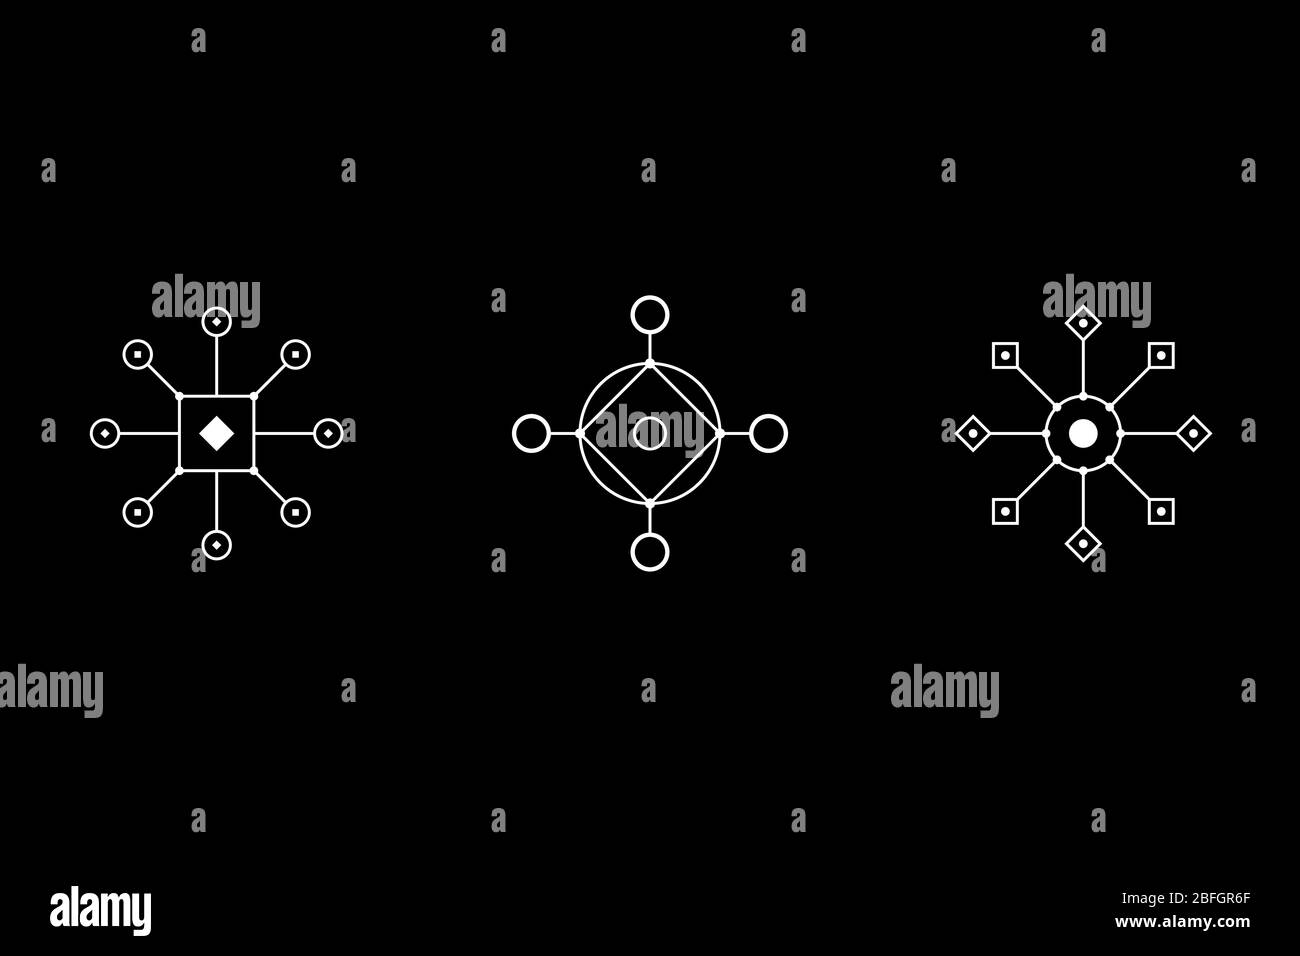 Magisches Geometrieweiß Symbolsatz. Kreis, Quadrat, Rhombus mit eingemeißelten Figuren. Vektorgrafik. Stock Vektor